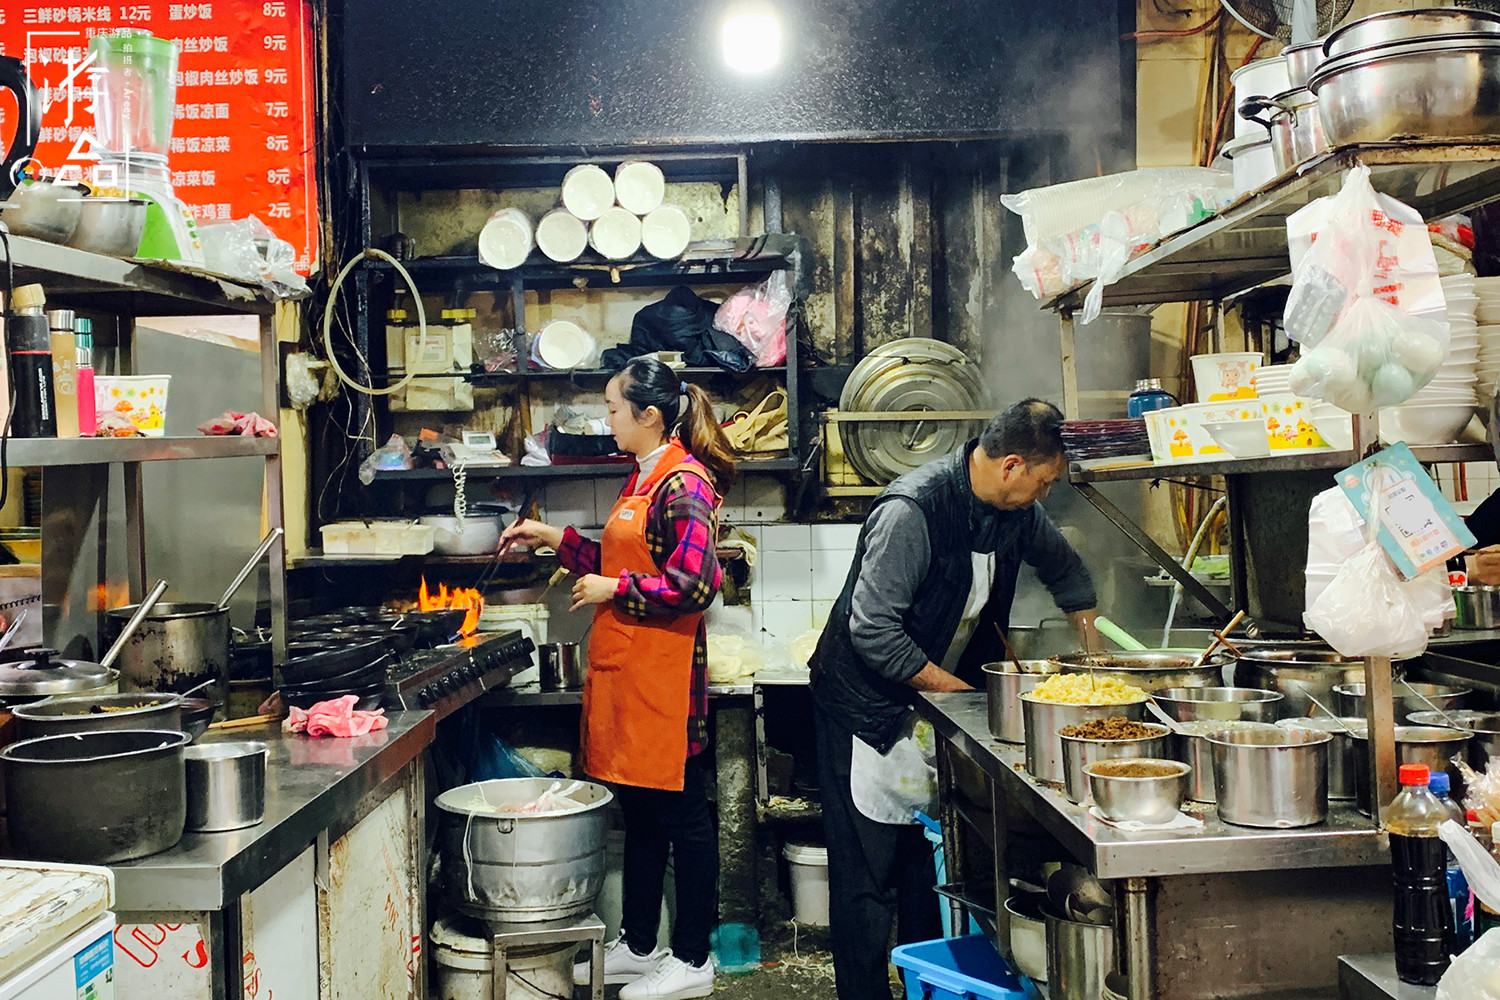 重庆街头餐馆多，面积小但五脏俱全，经营者还都是夫妻